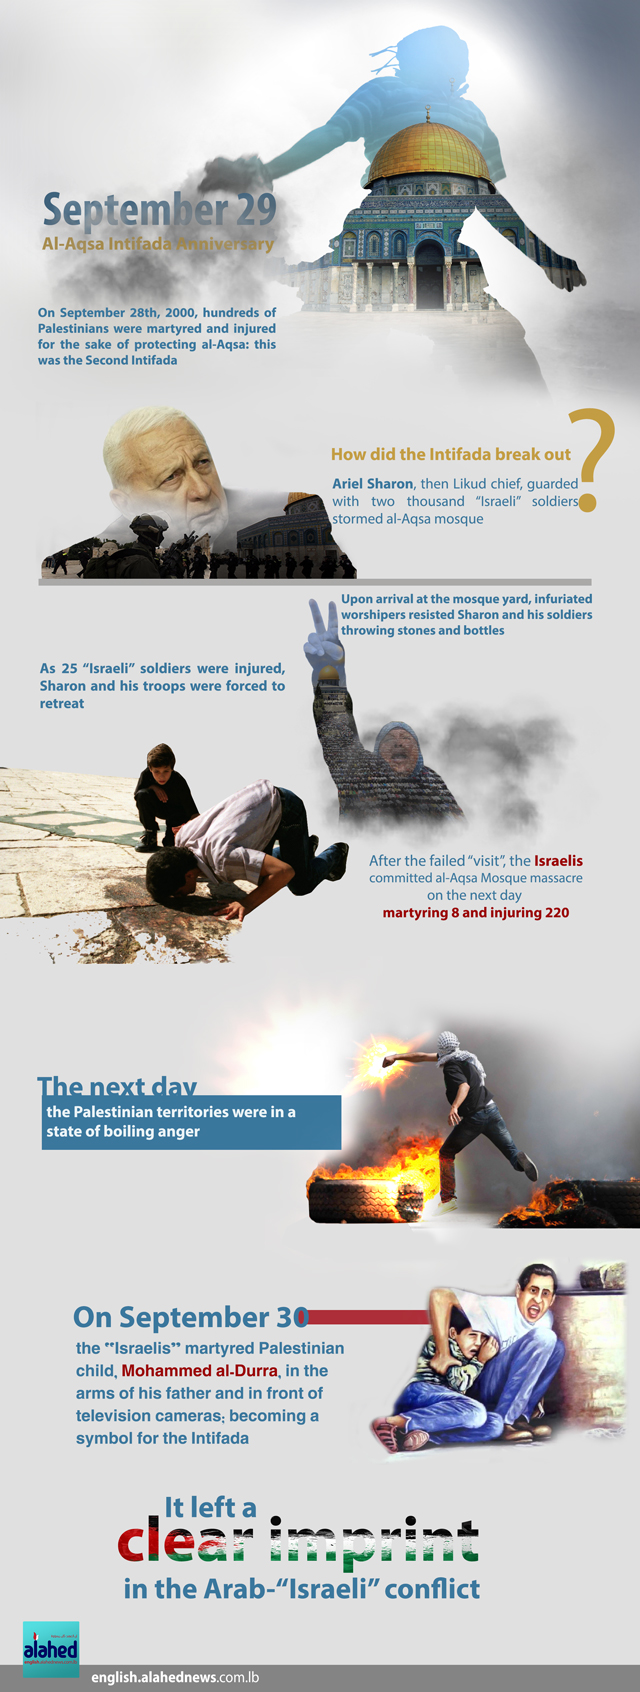 Al-Aqsa Intifada Anniversary